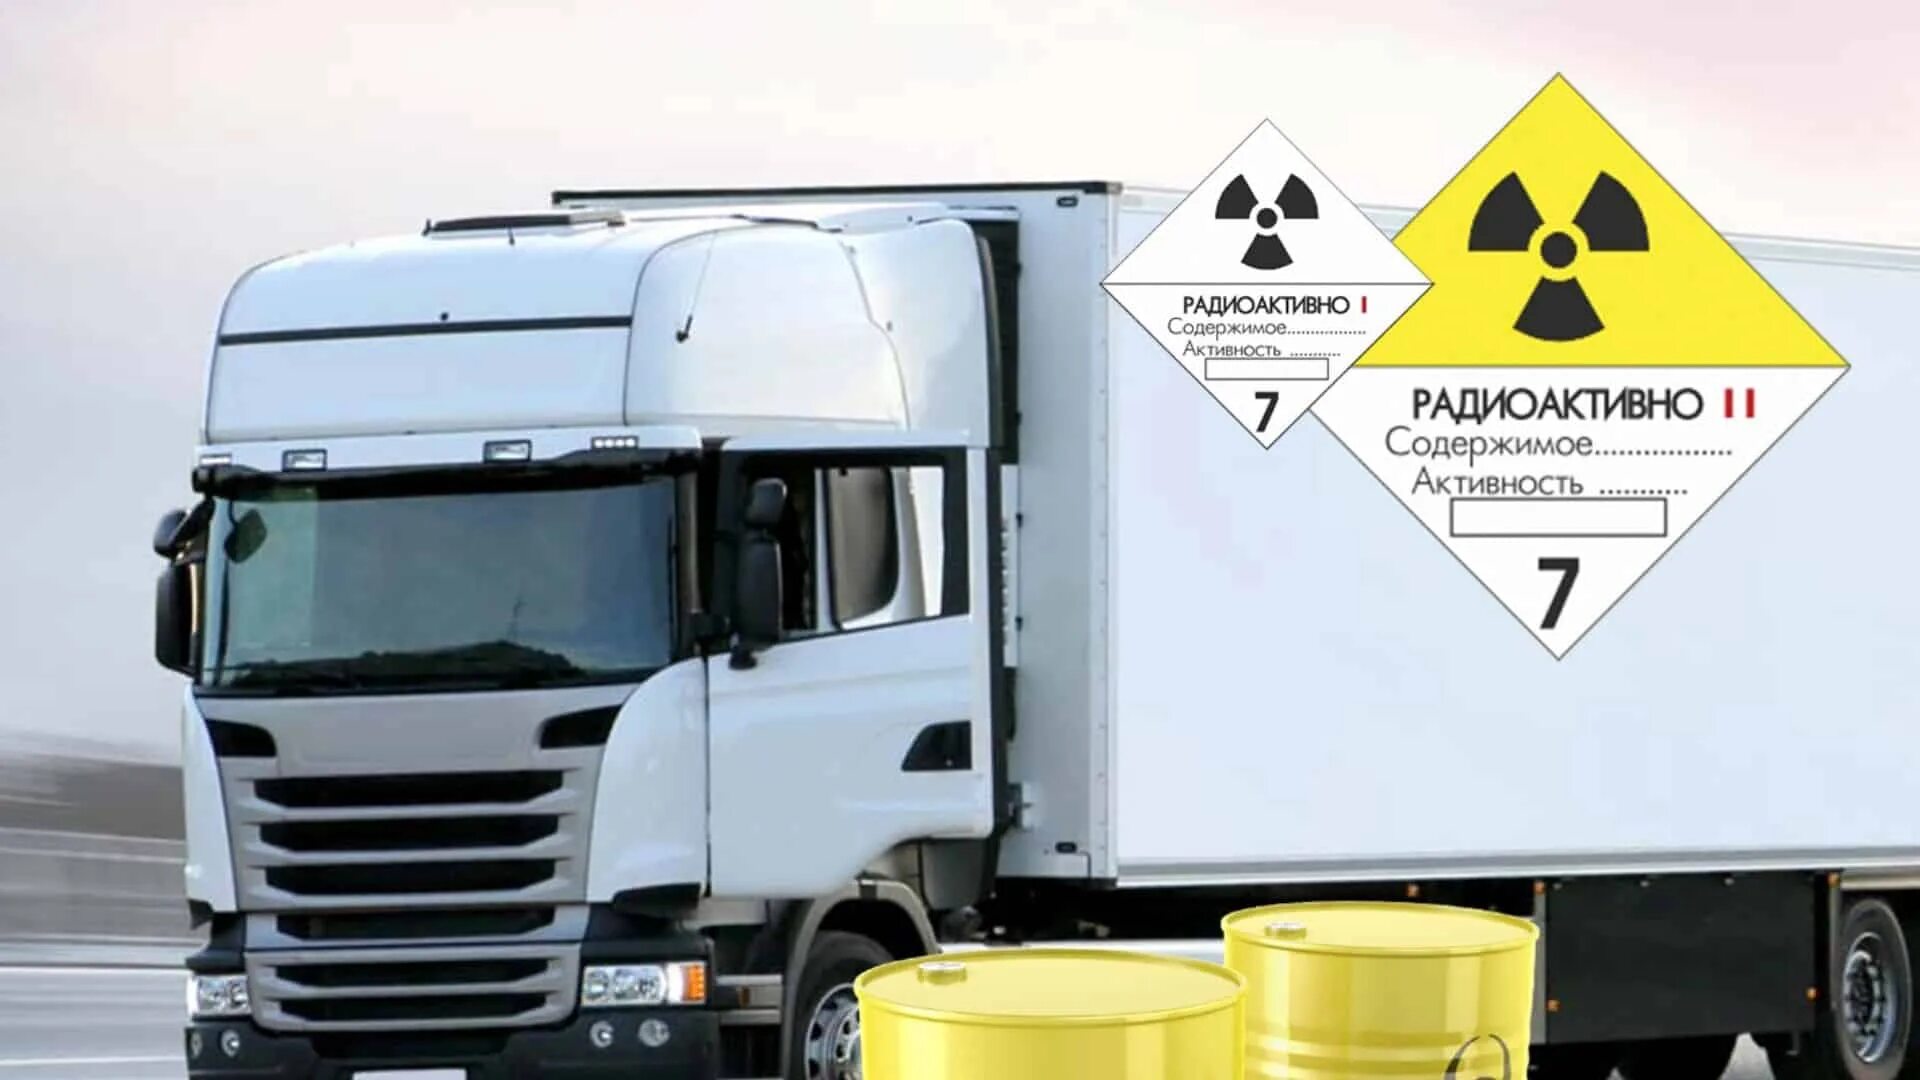 Перевозка опасных грузов рф. Транспортировка радиоактивных материалов. Специализированный контейнер для опасных грузов. Машина для перевозки радиоактивных материалов. Опасный груз авто.